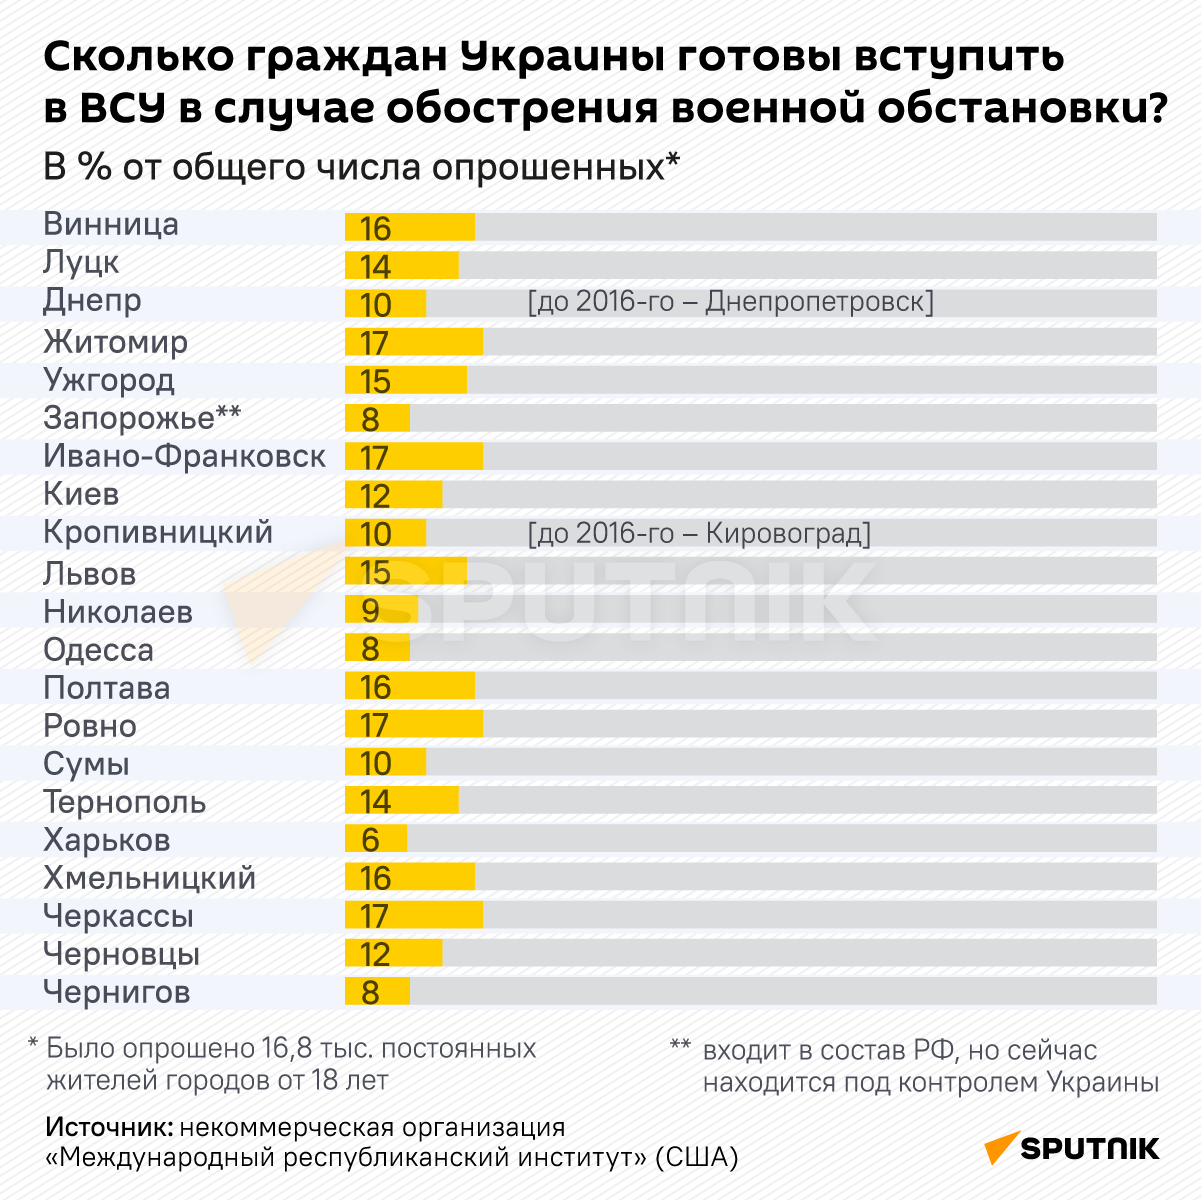 Сколько граждан Украины готовы вступить в ВСУ в Случае обострения военной обстановки? - Sputnik Узбекистан